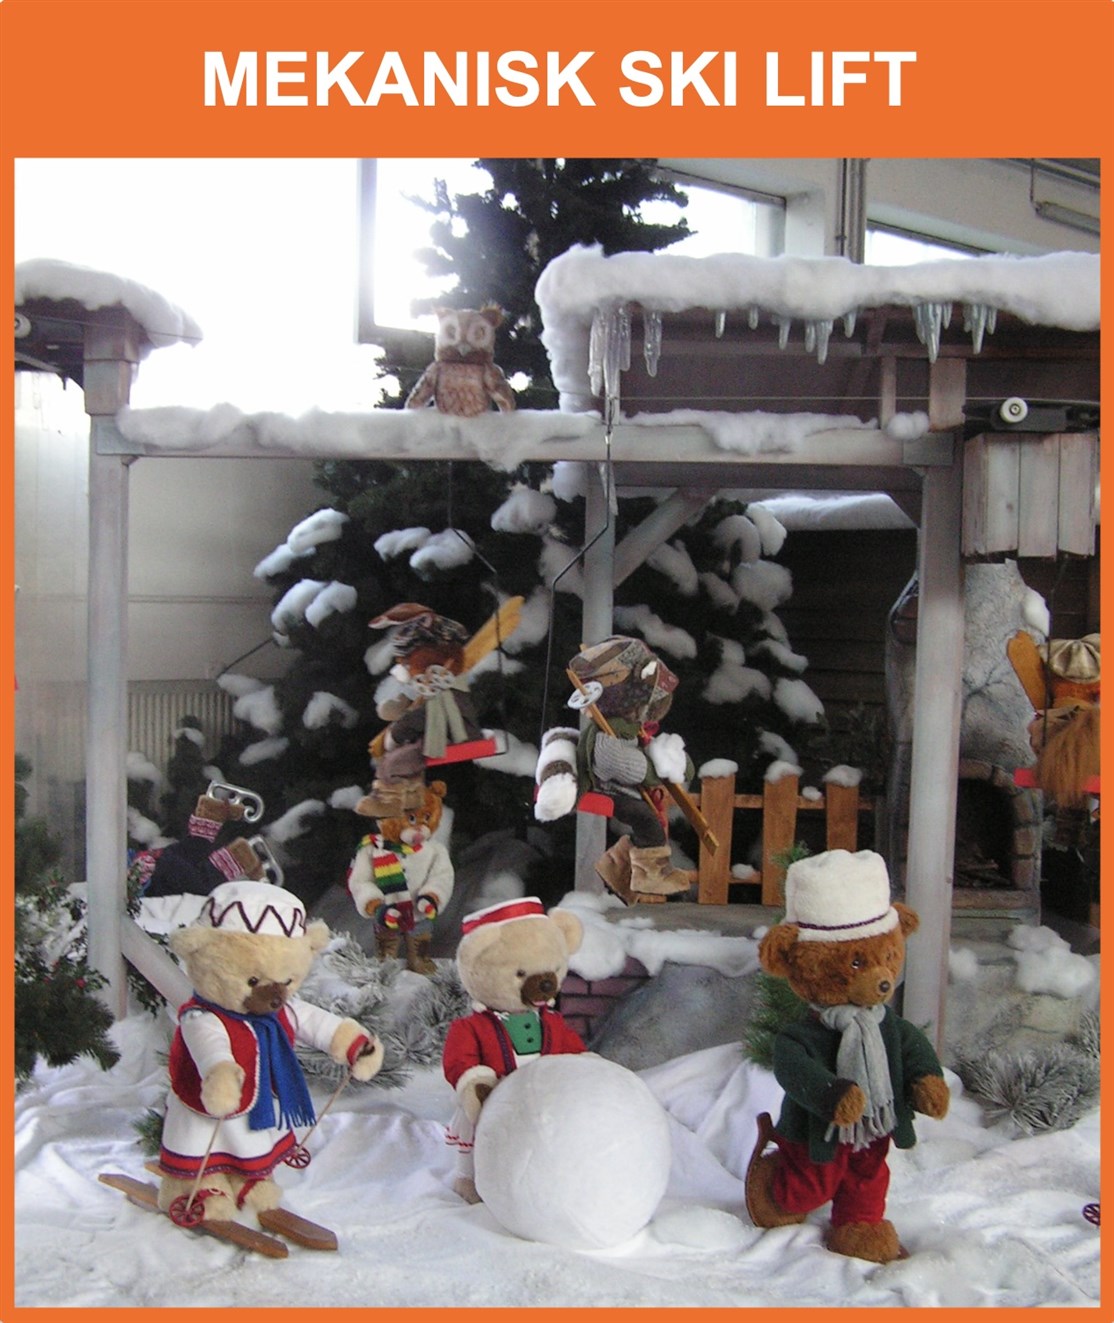 Vi tilbyder større mekaniske og interaktive udstillings ting til juleudstillinger bl.a. denne store skilift med jule dyr og sne
*